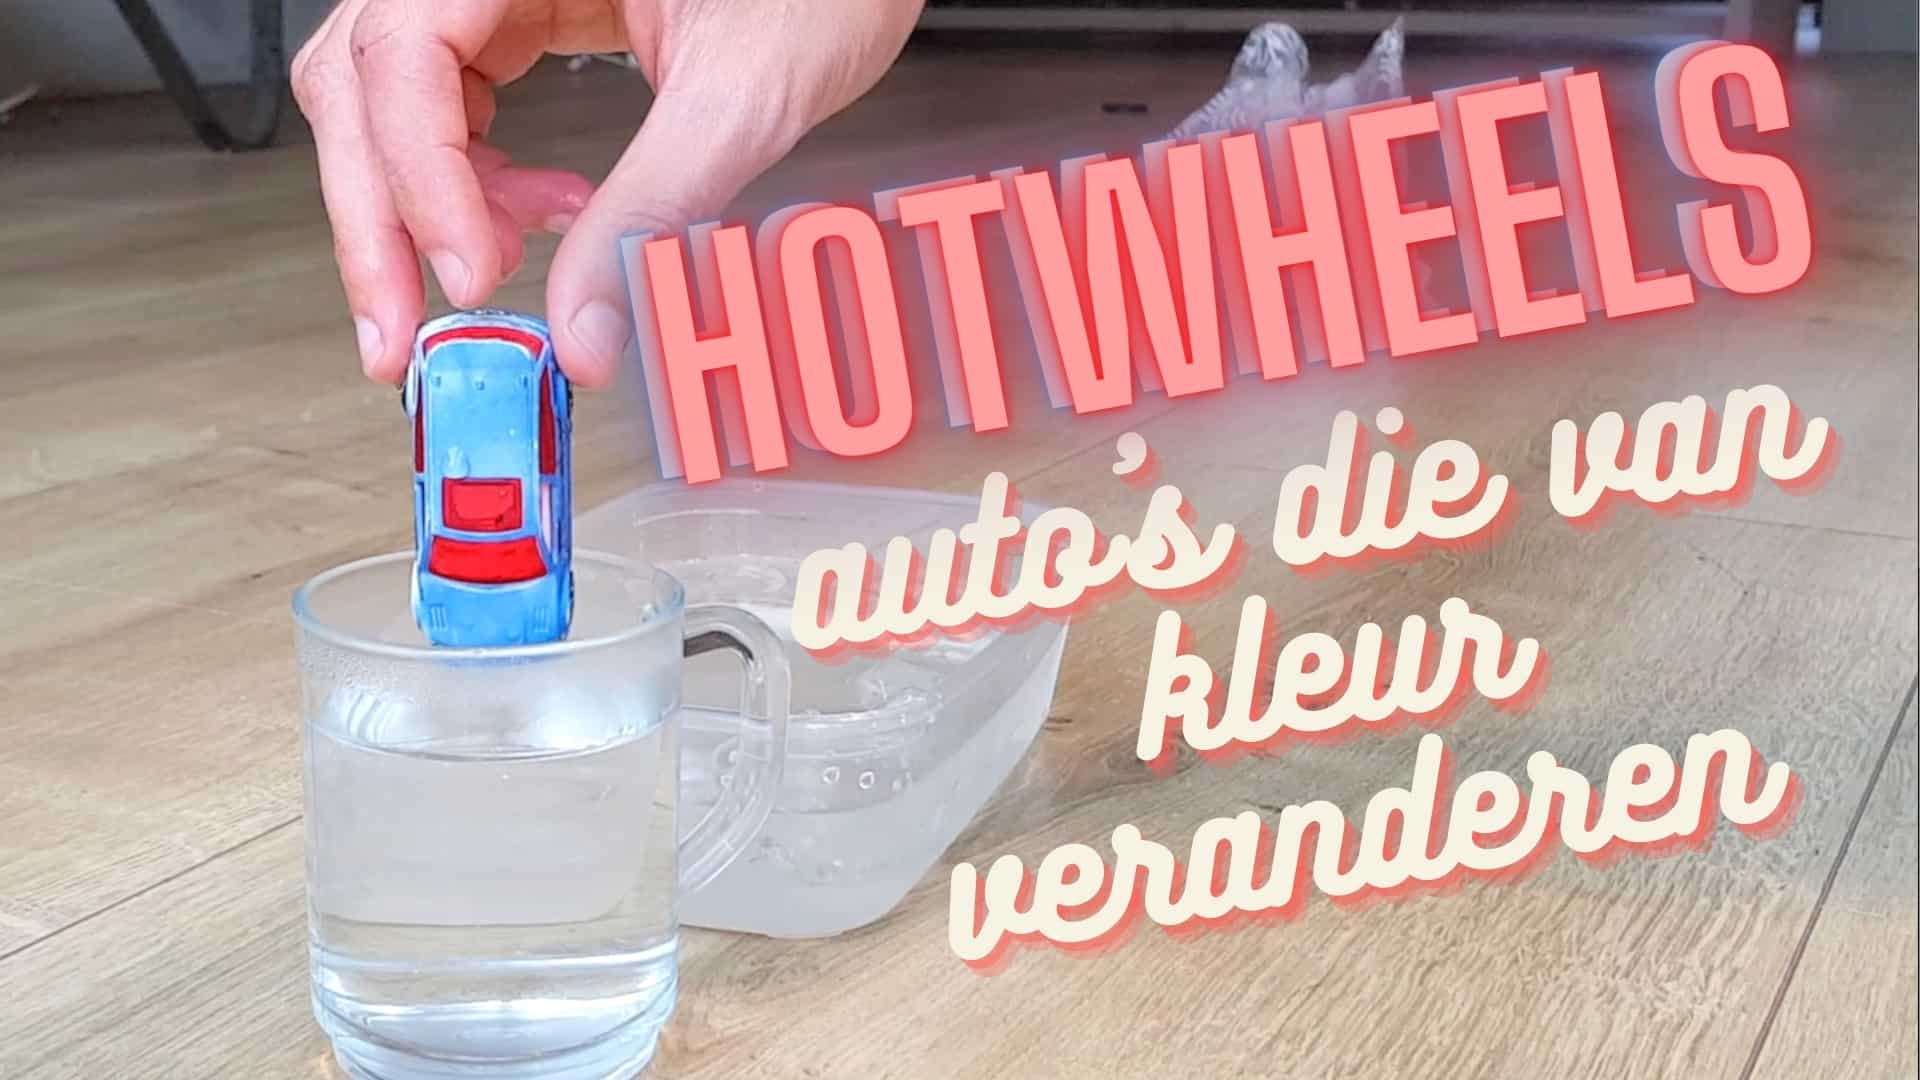 Hotwheels autos die van kleur veranderen